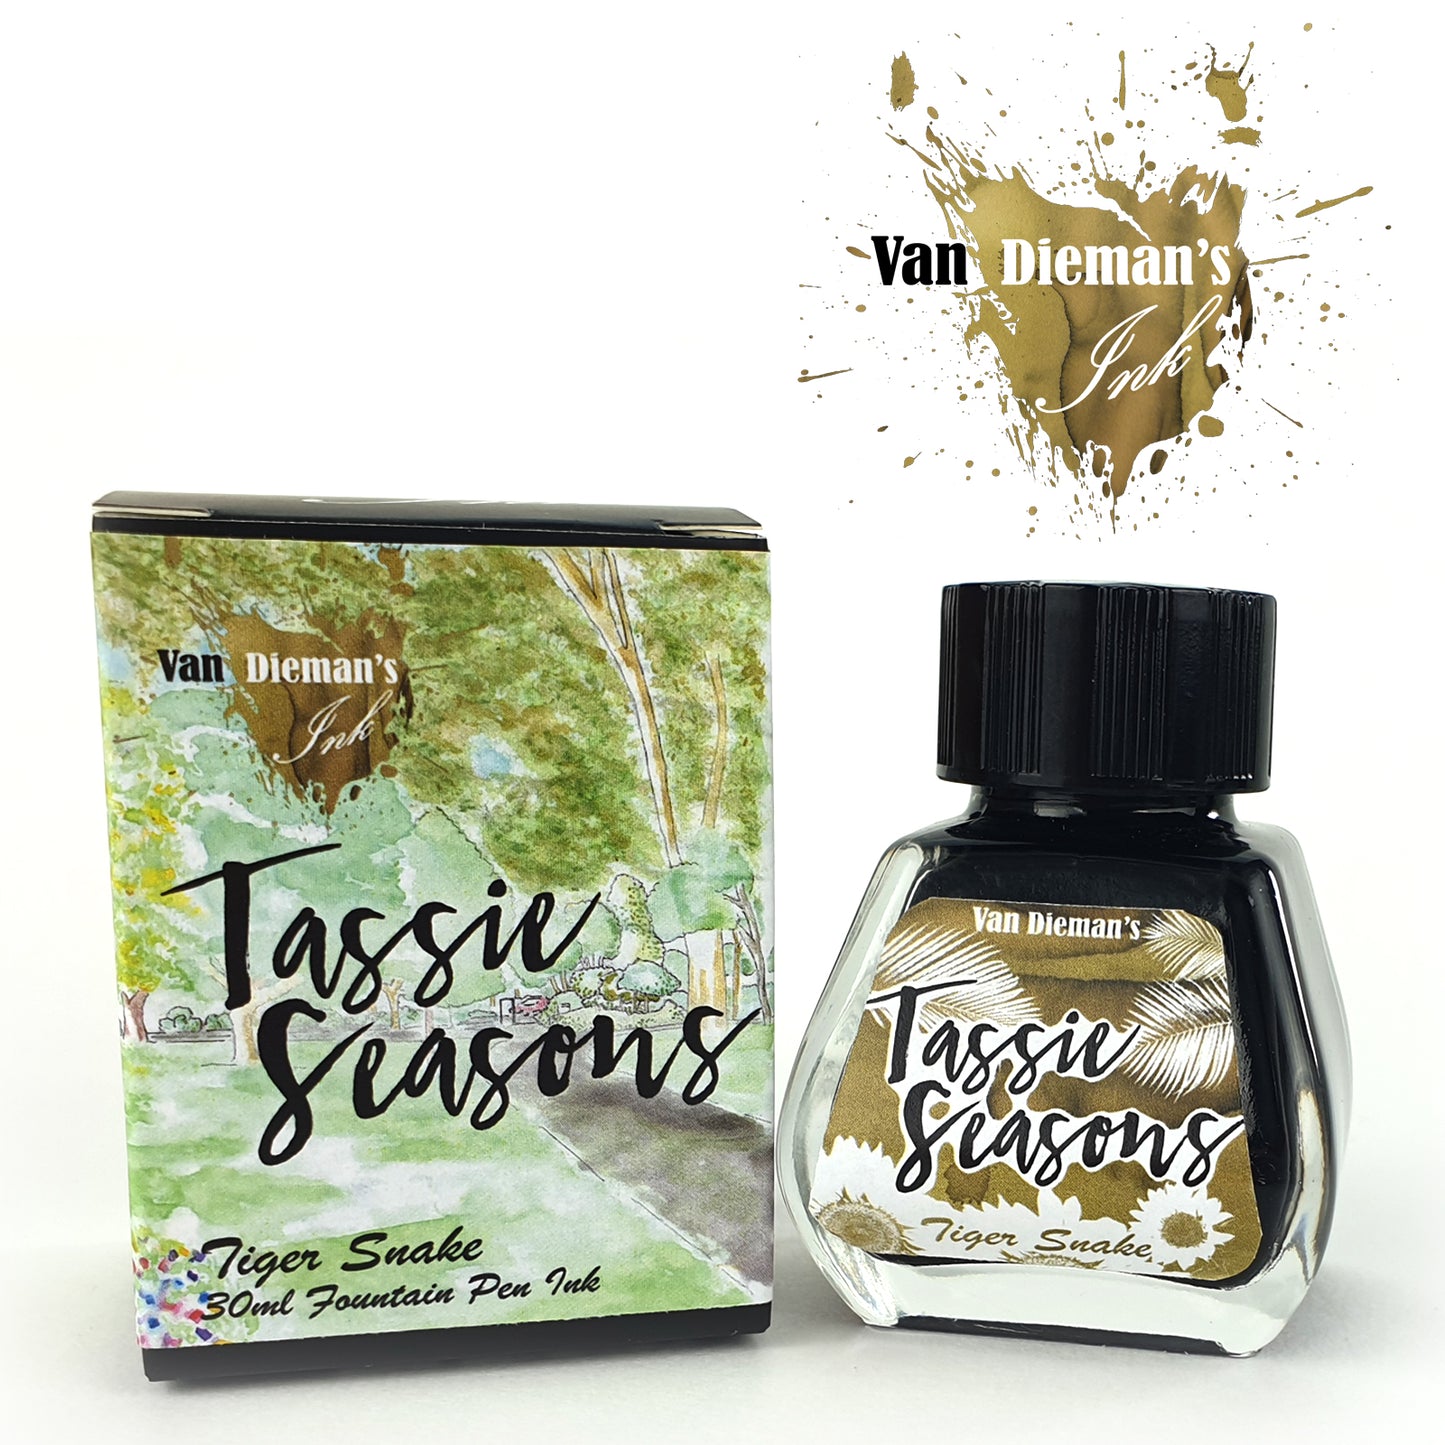 Van Dieman's Tassie Seasons (Summer) Tiger Snake - Fountain Pen Ink